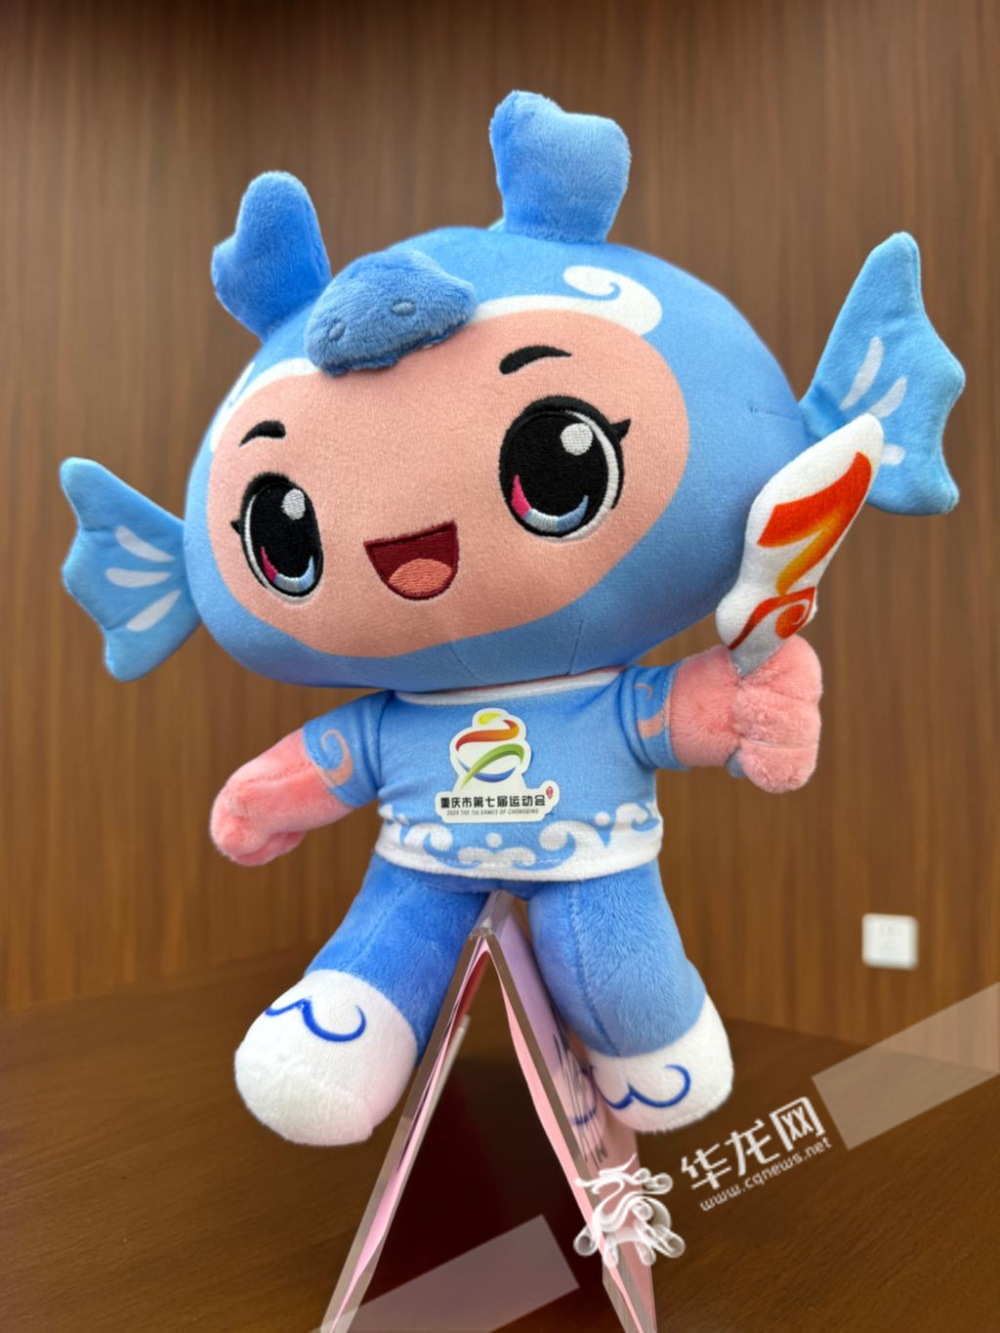 大眼萌娃名叫汇汇 重庆市第七届运动会公布会徽,吉祥物